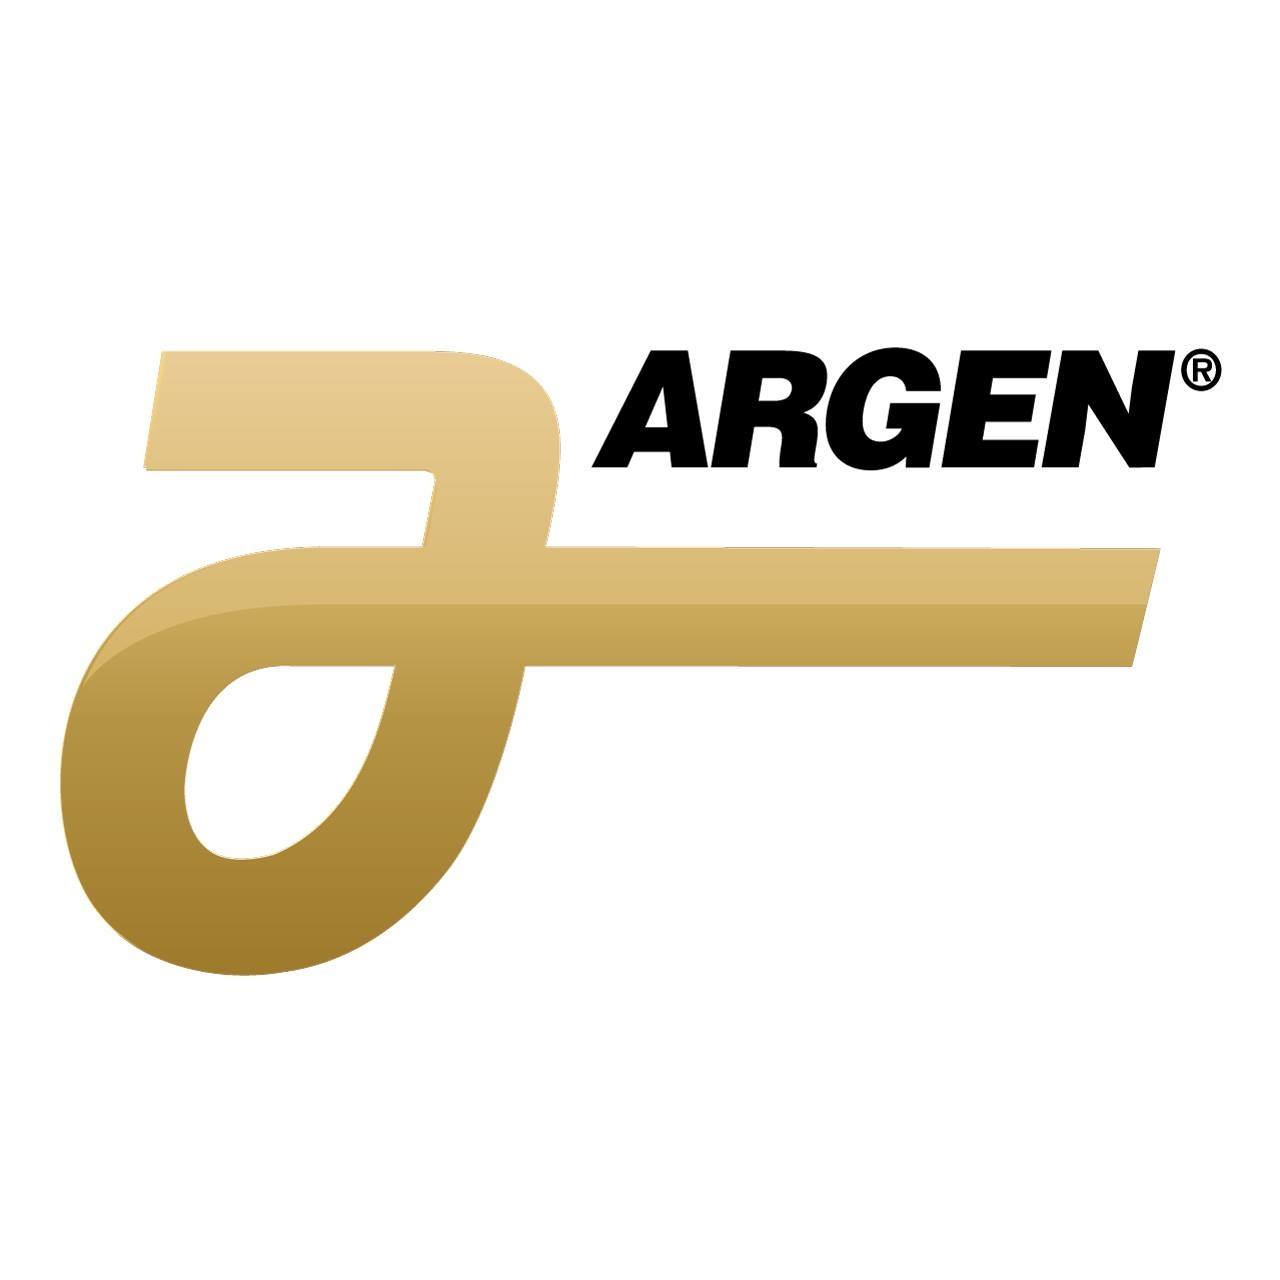 The Argen